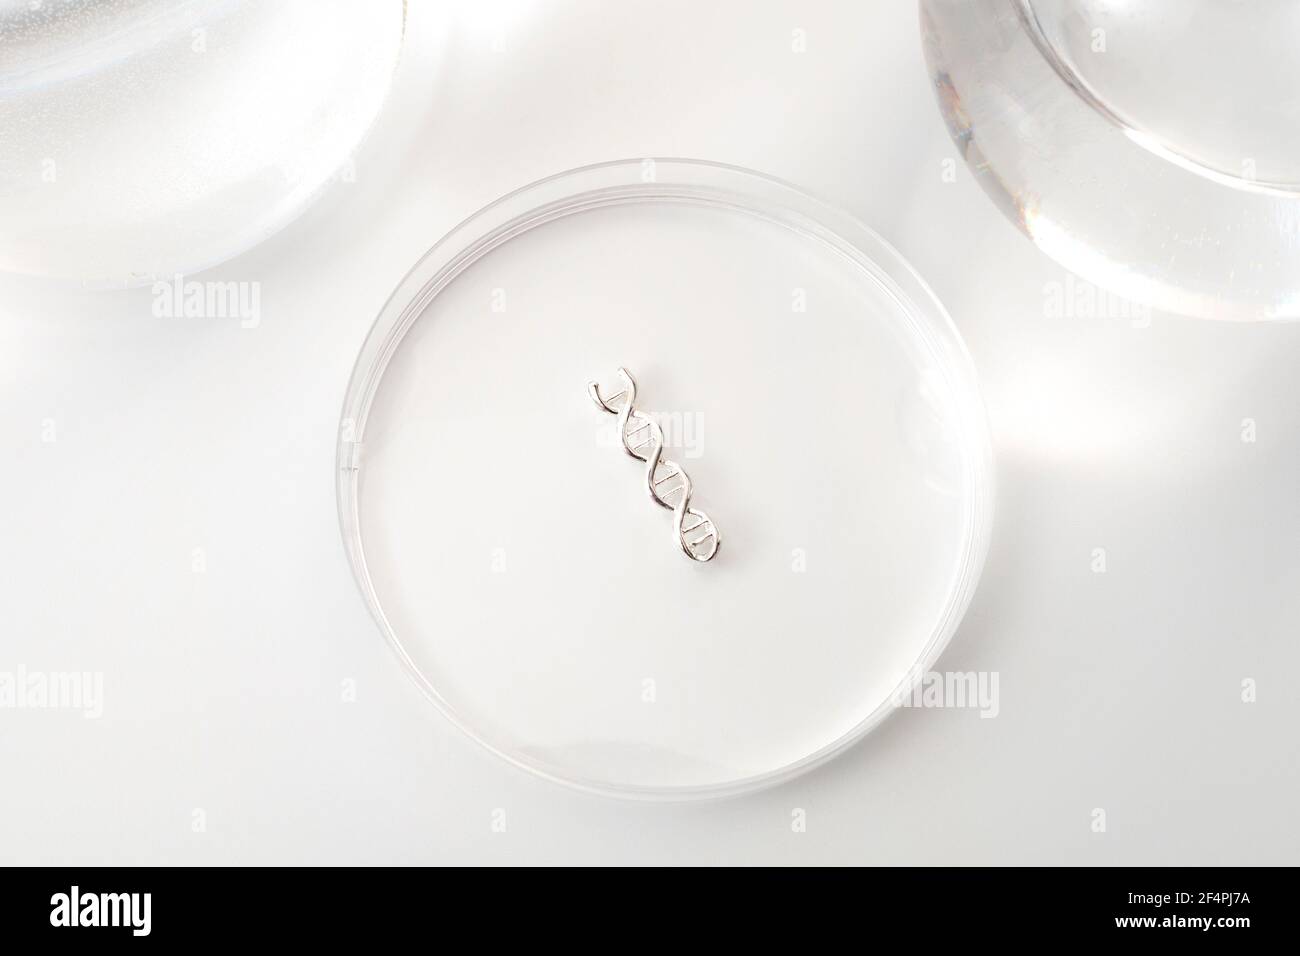 DNA-Tests, Laborexperiment und Konzept der genetischen Forschung mit einem doppelten Helix-Molekül in einer Petrischale isoliert auf weißem Hintergrund Stockfoto